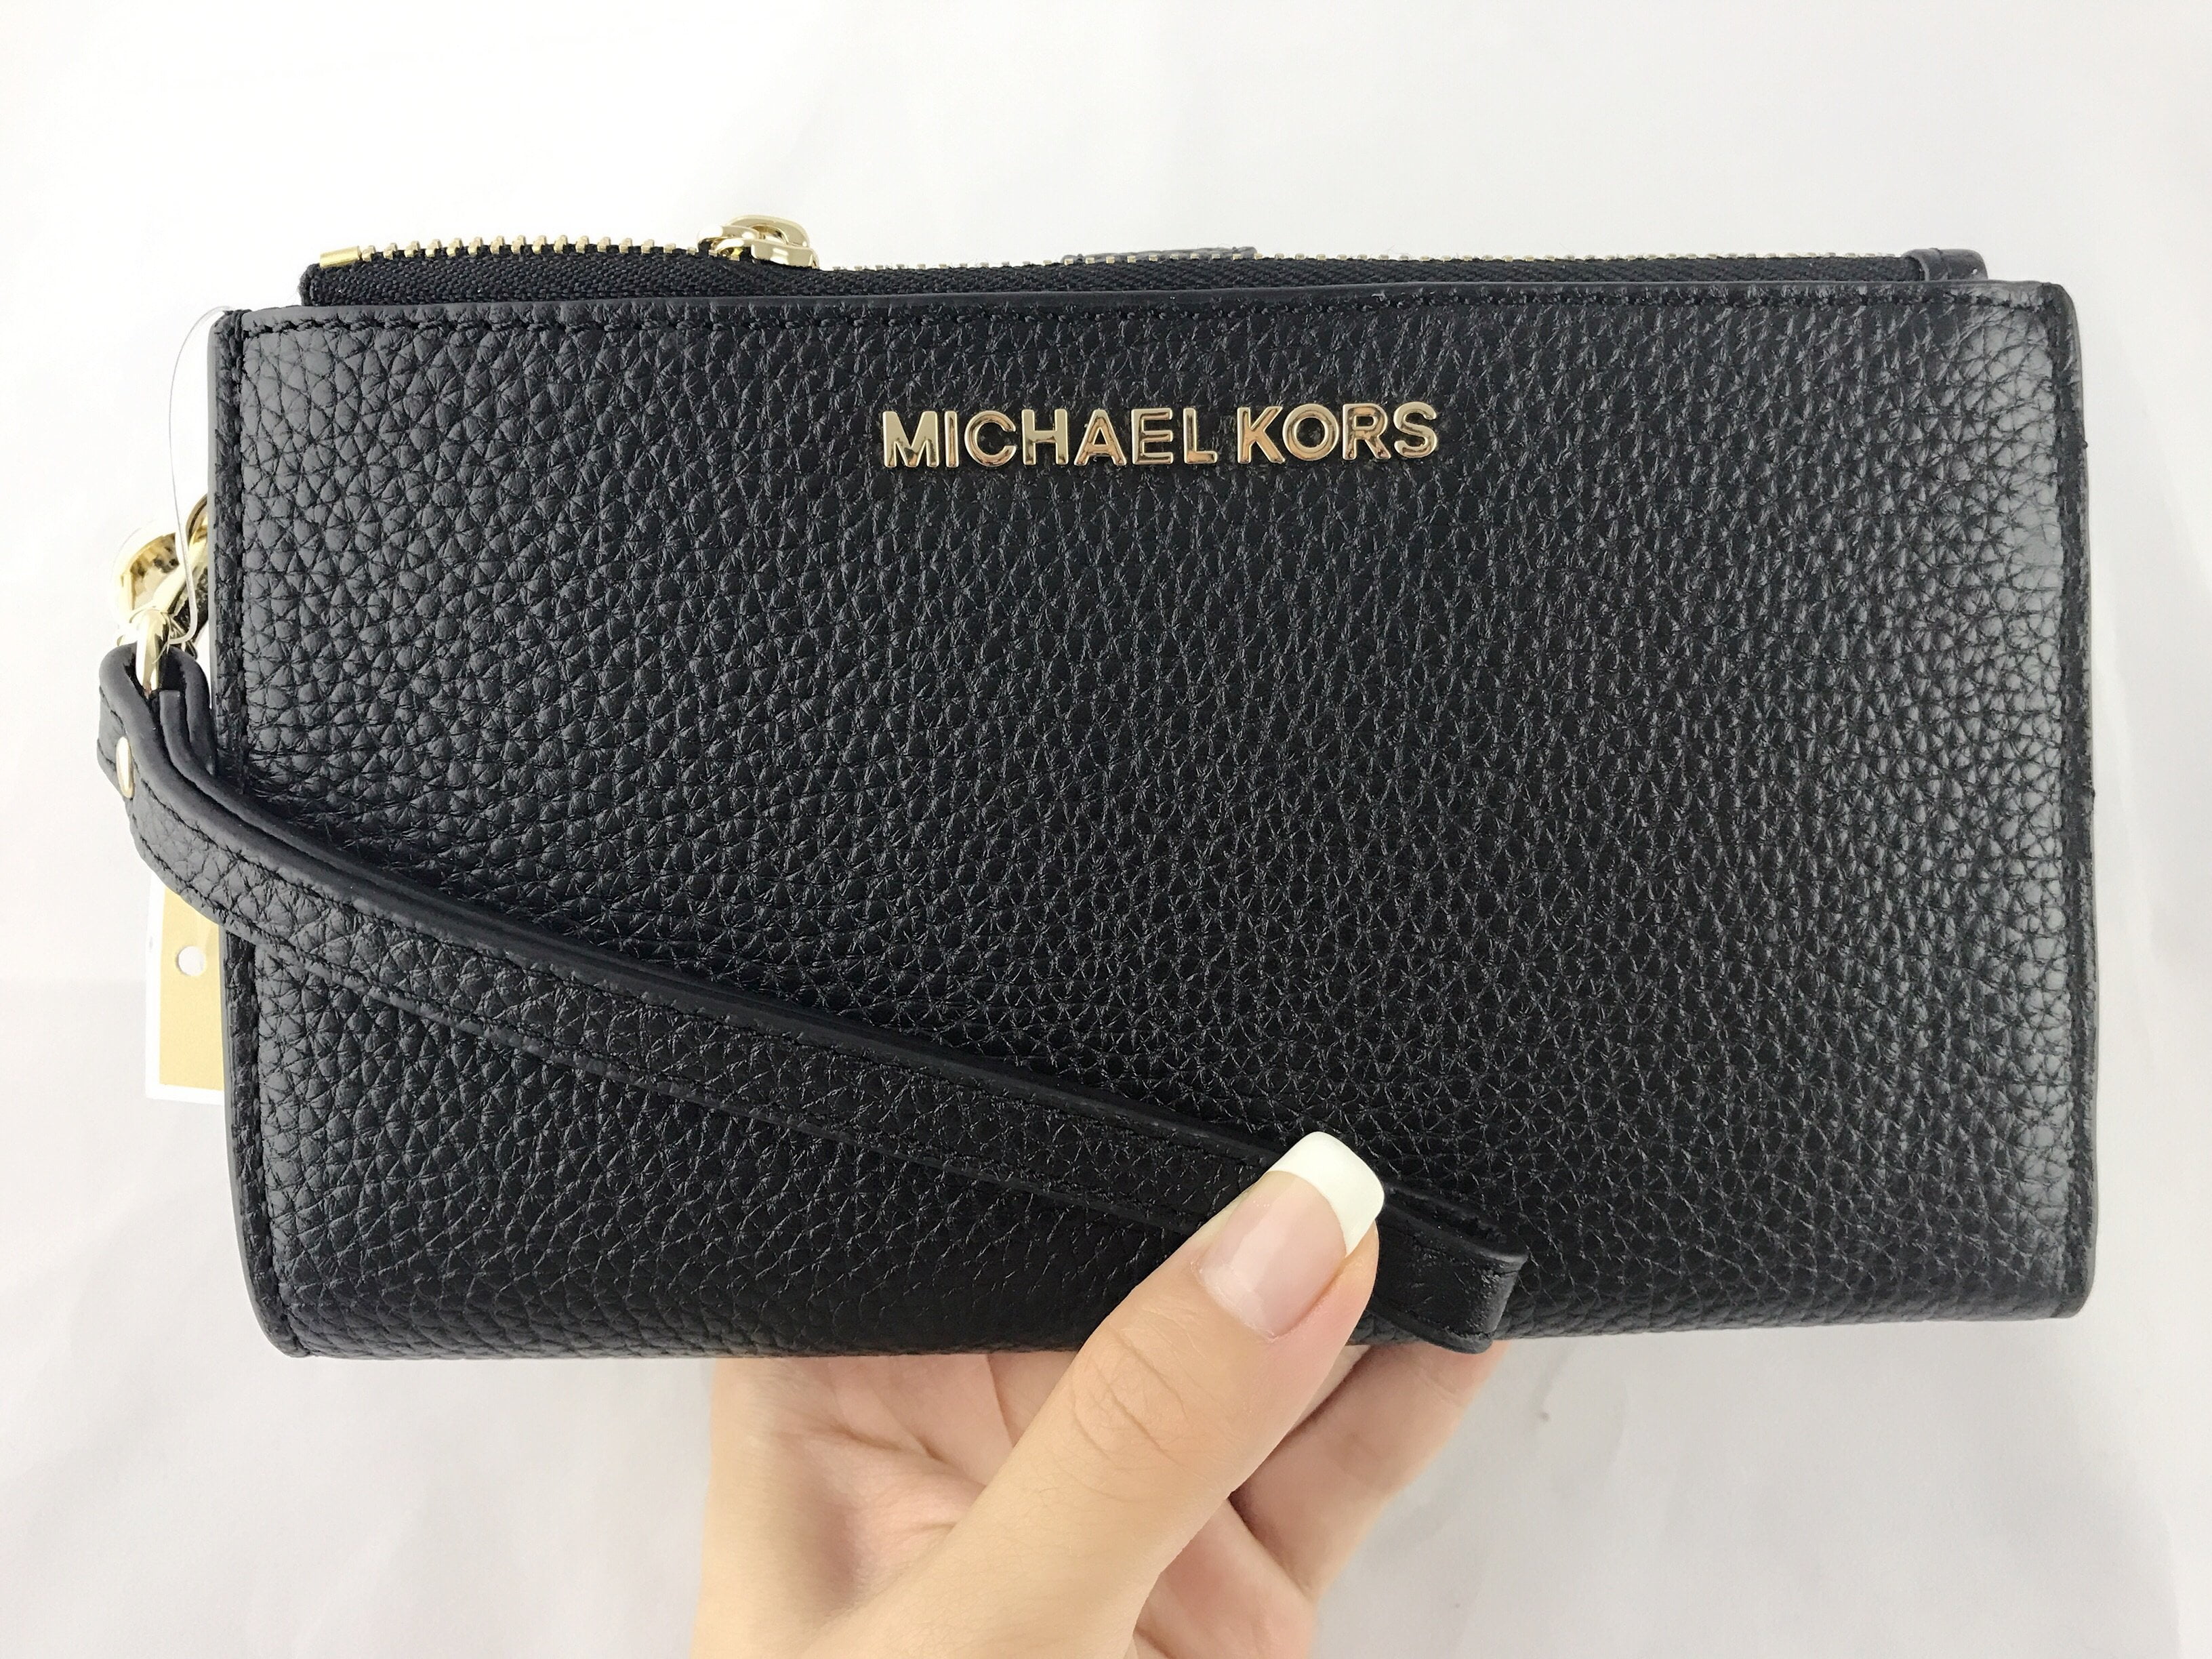 Michael Kors pebbled leather wristlet